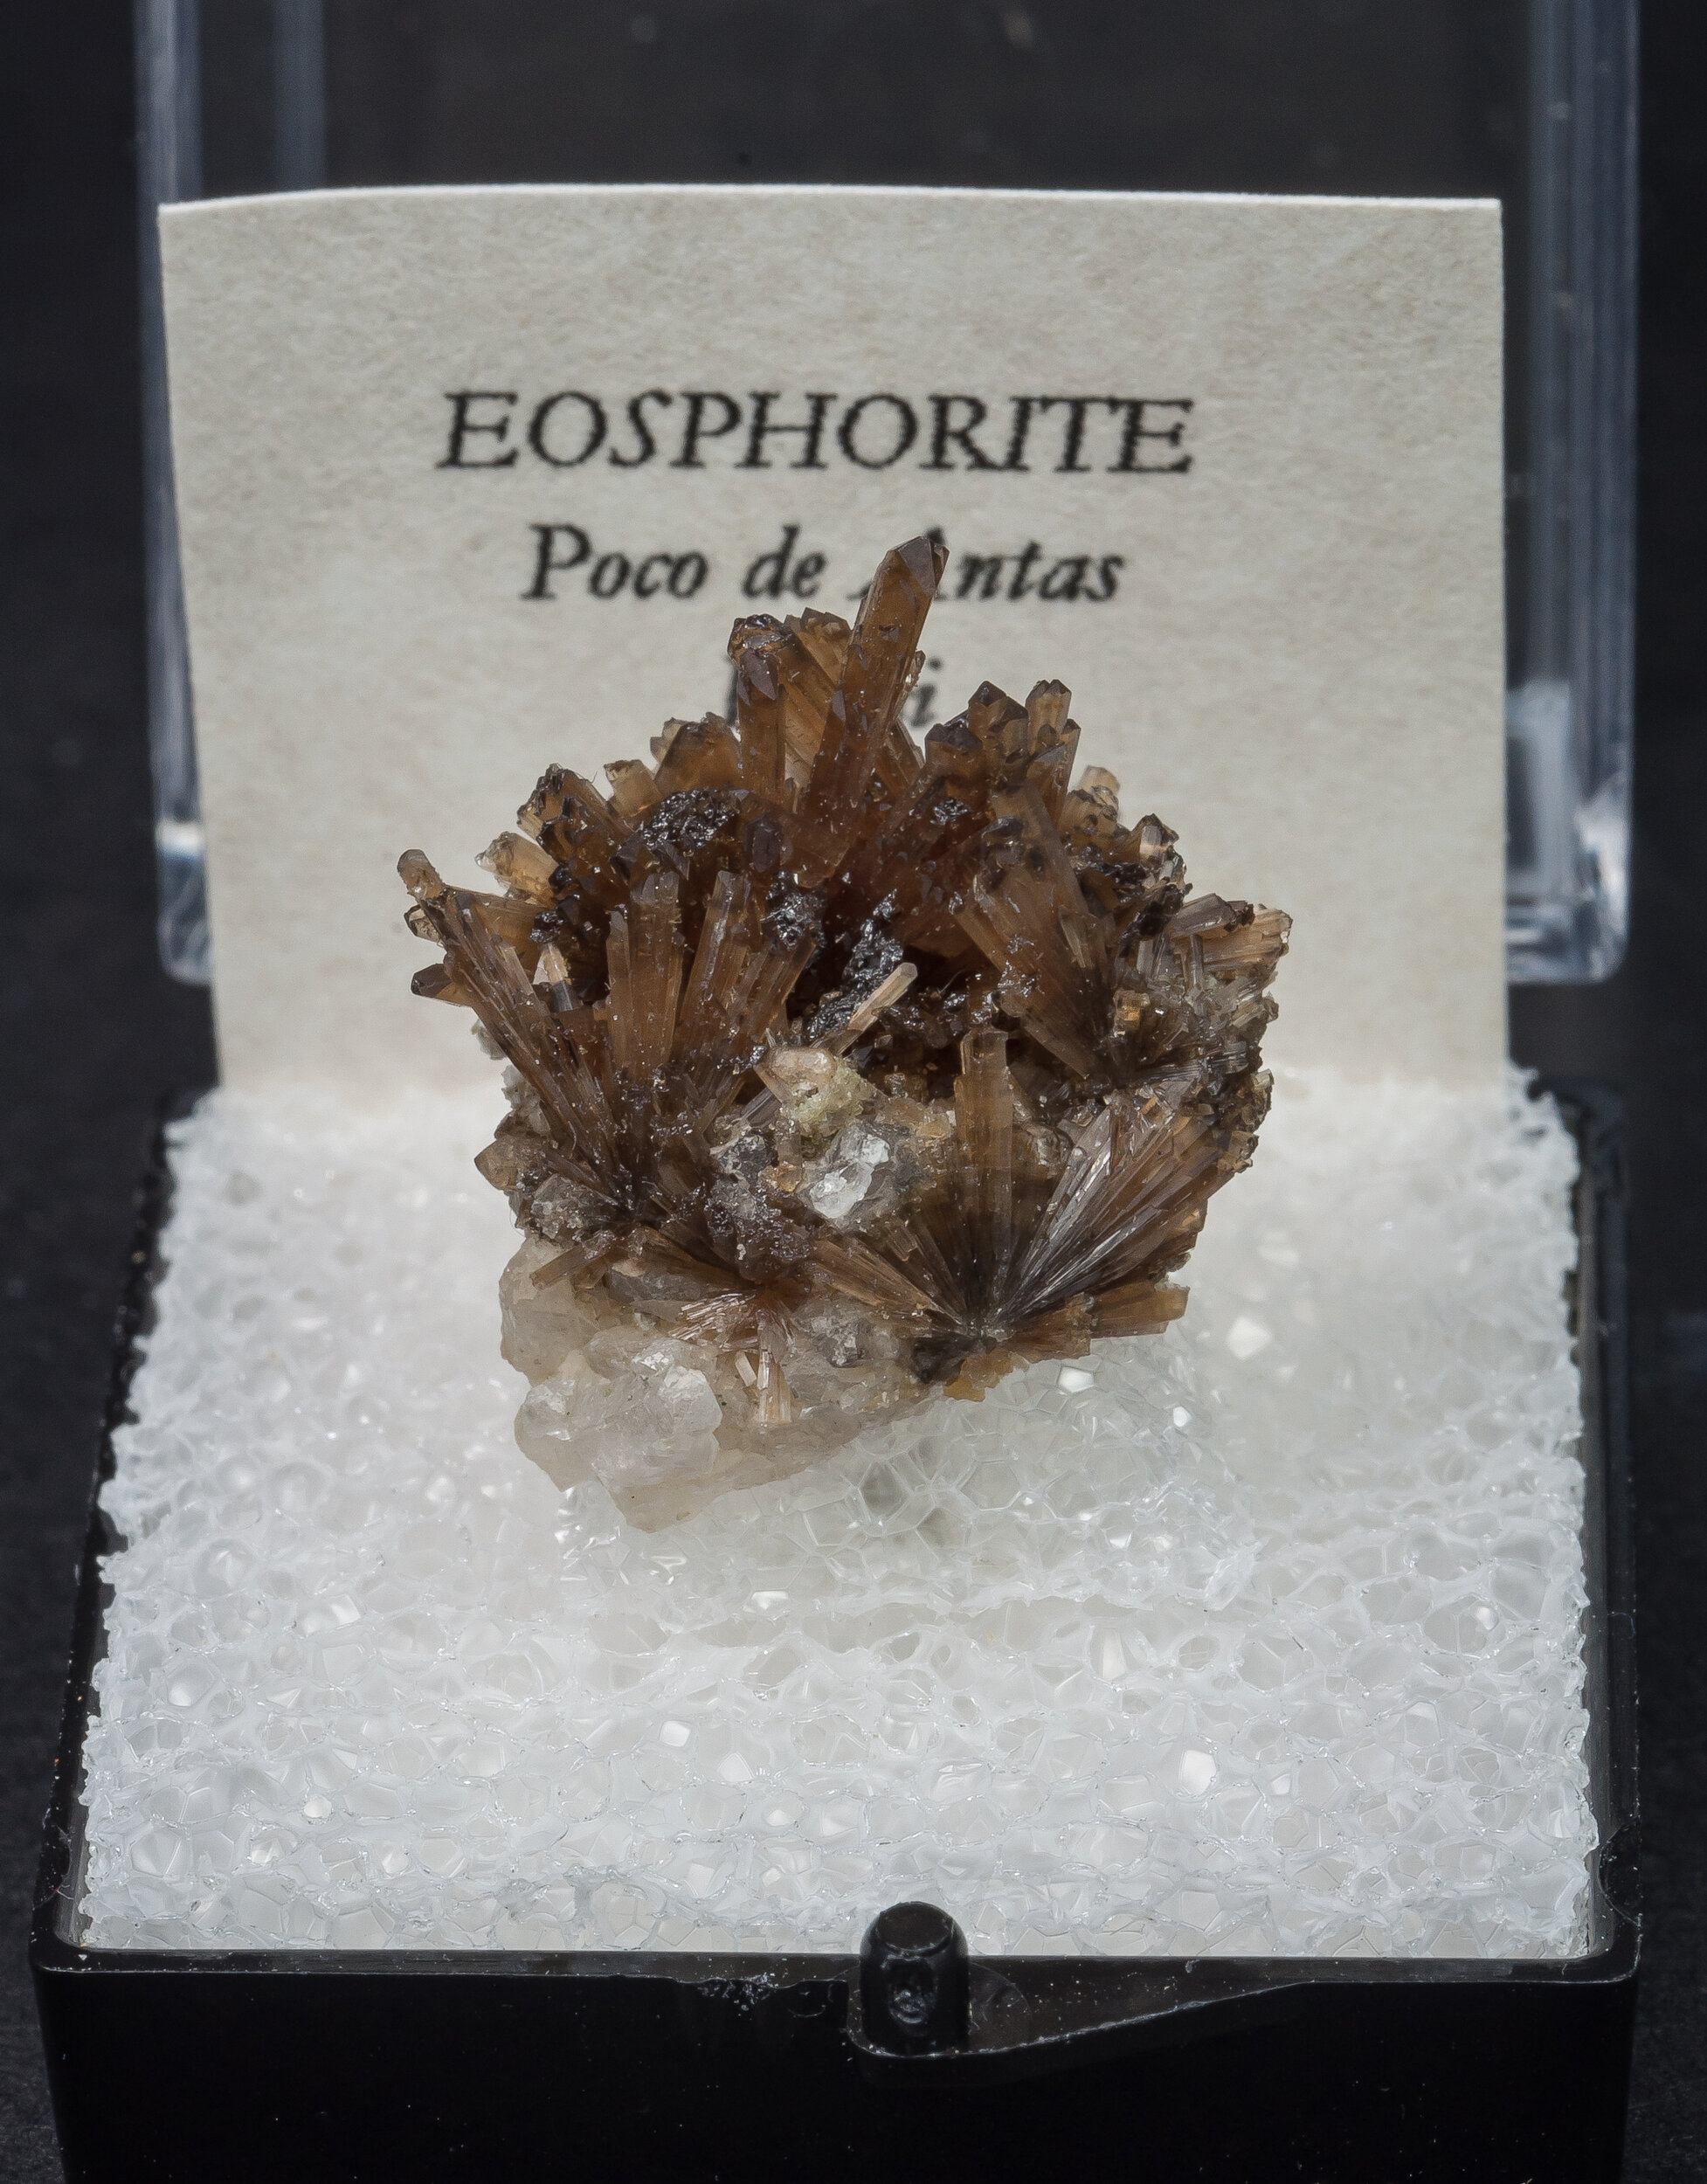 specimens/s_imagesAO0/Eosphorite-TZB13AO0f1.jpg